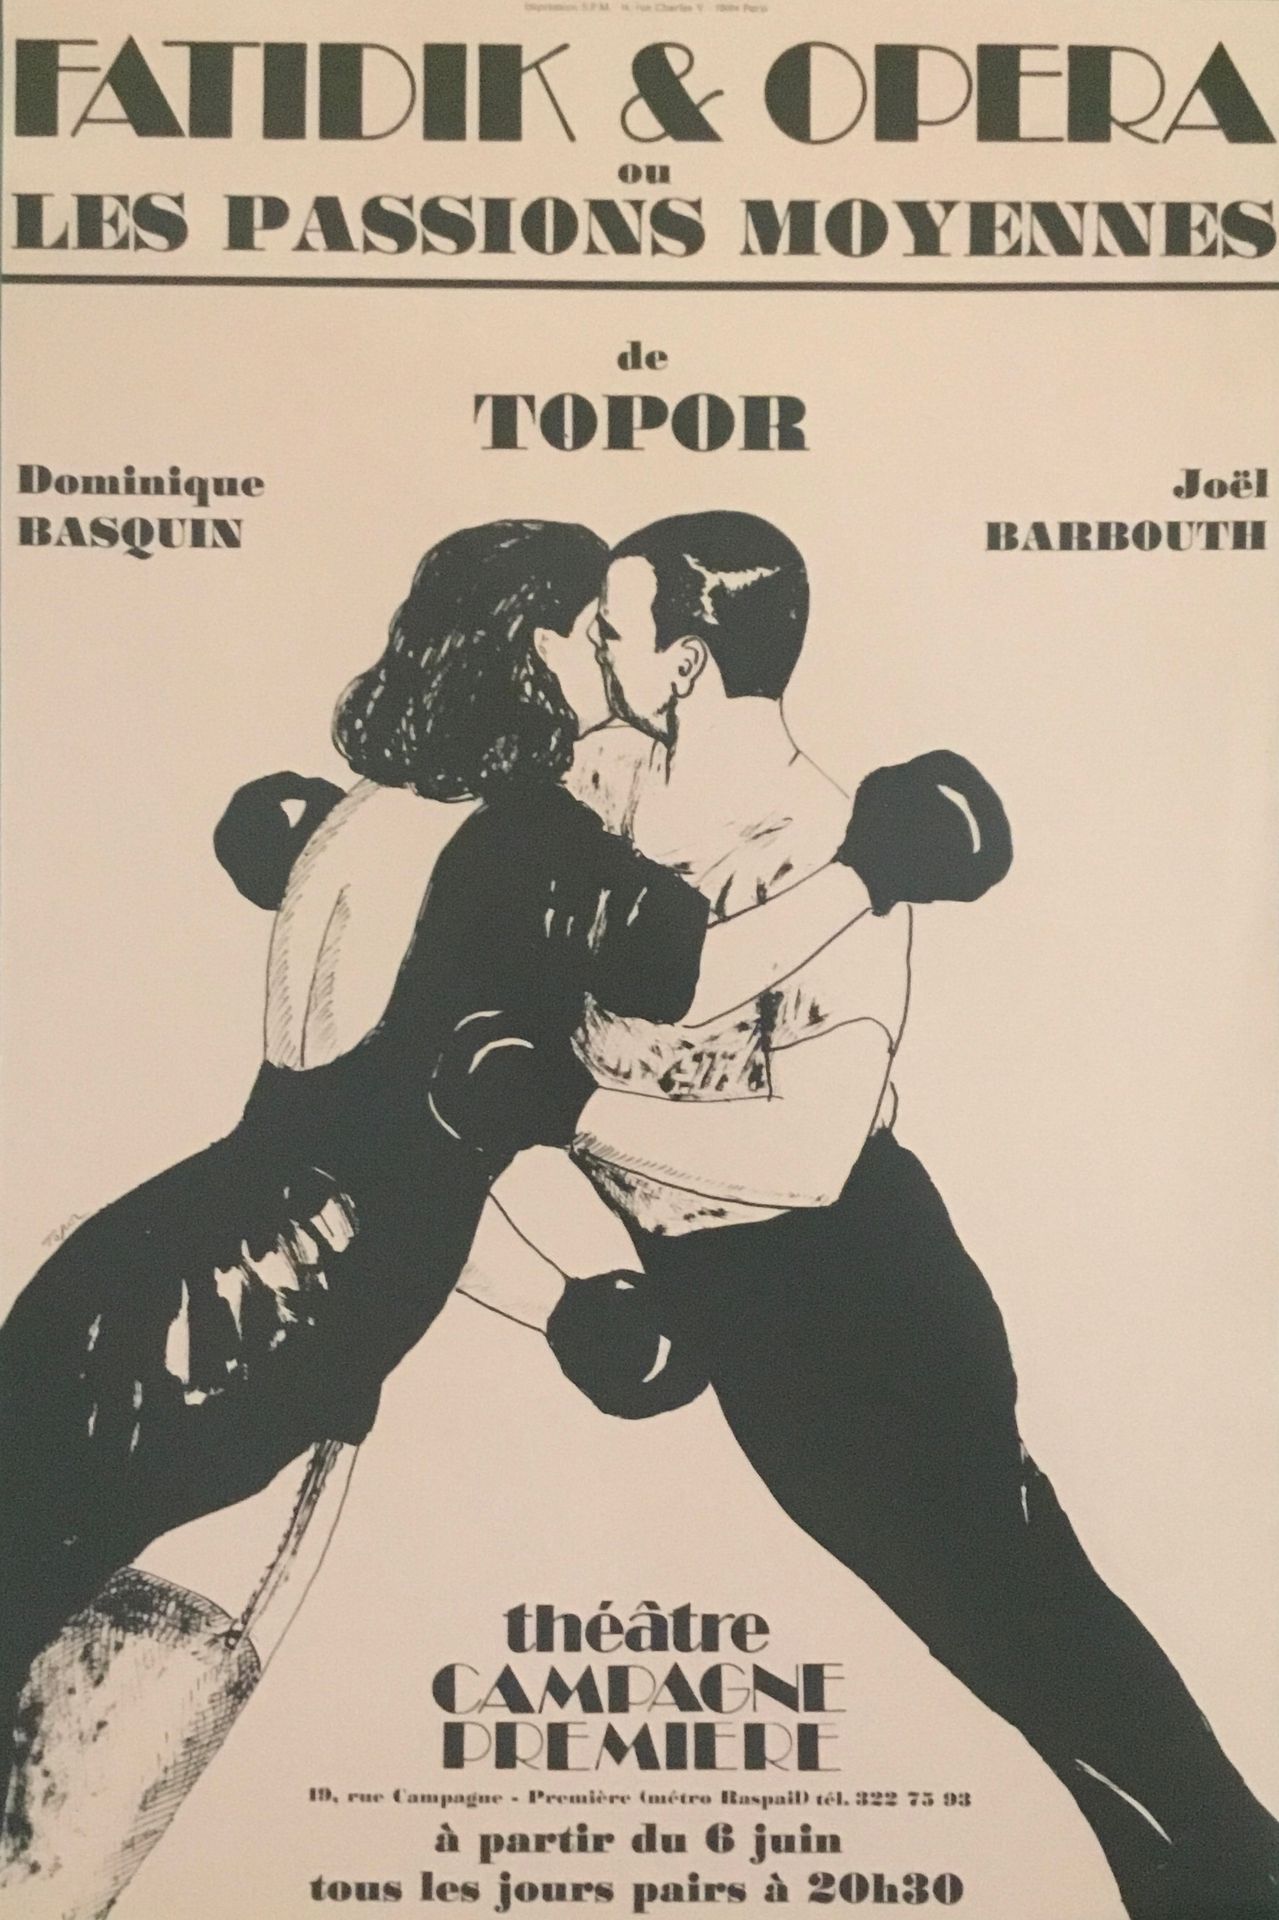 Null TOPOR Roland 

Affiche Offsset "Fatidique et Opéra" Théâtre campagne premie&hellip;